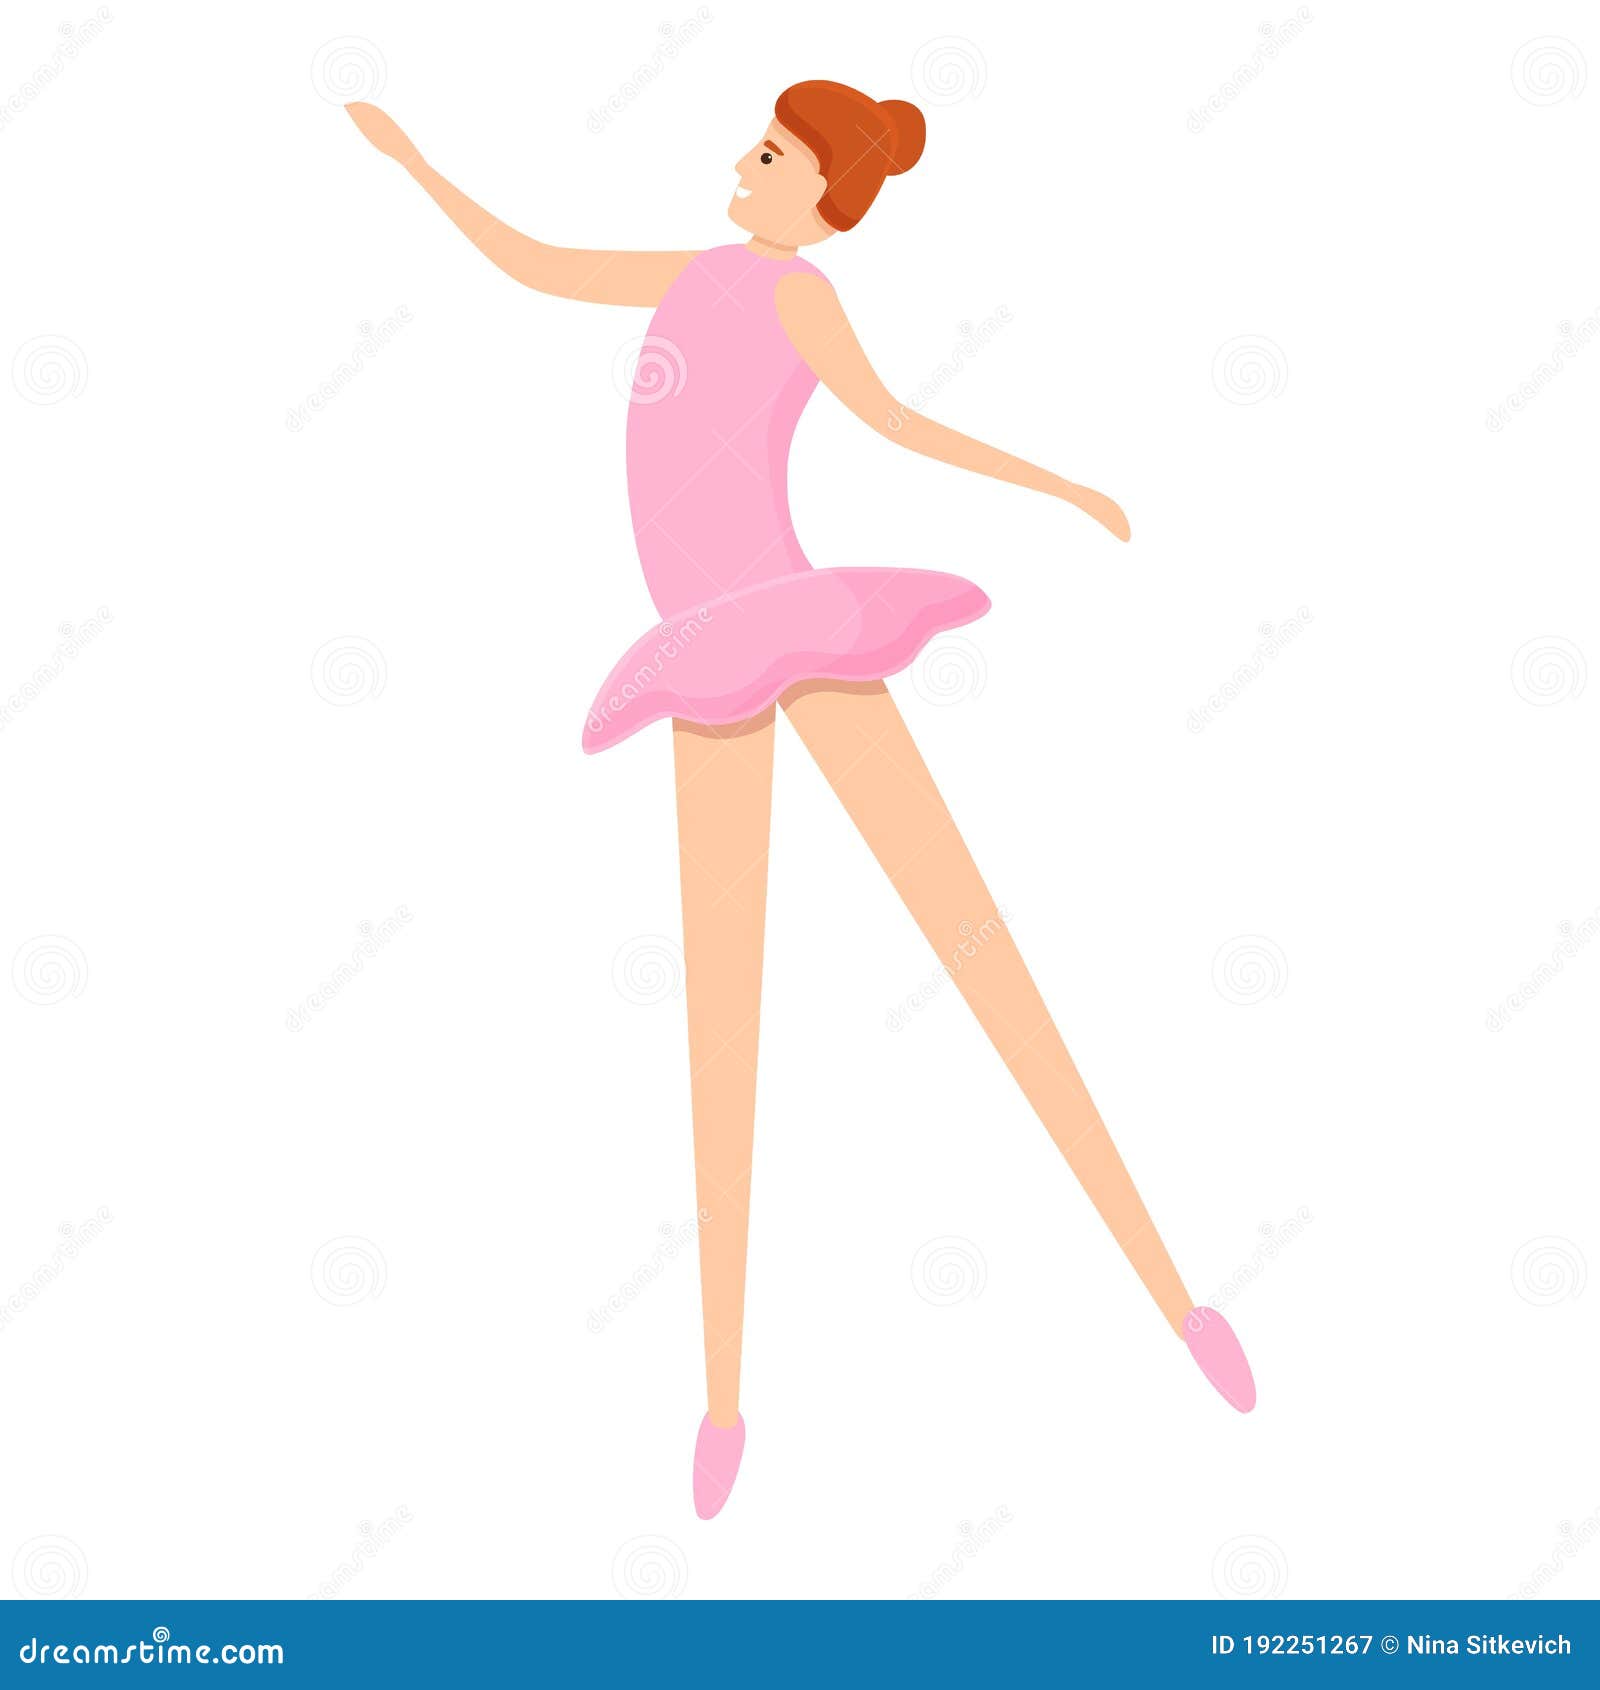 Bailarina De Ballet Vectores, Iconos, Gráficos y Fondos para Descargar  Gratis